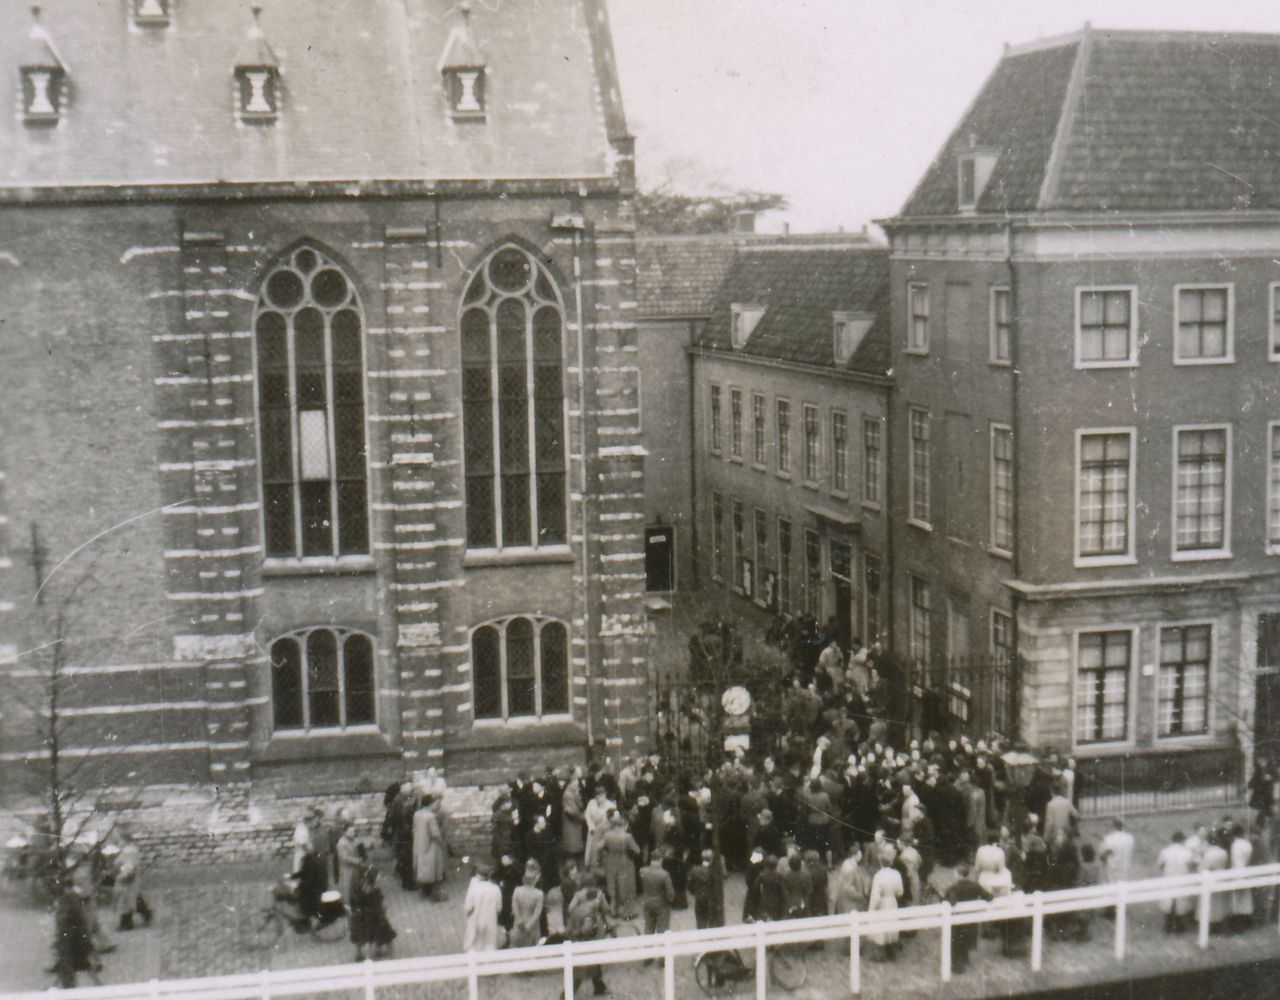 Het Rapenburg stroomt vol studenten nadat professor Cleveringa op 26 november 1940 een felle protestrede gehouden heeft.